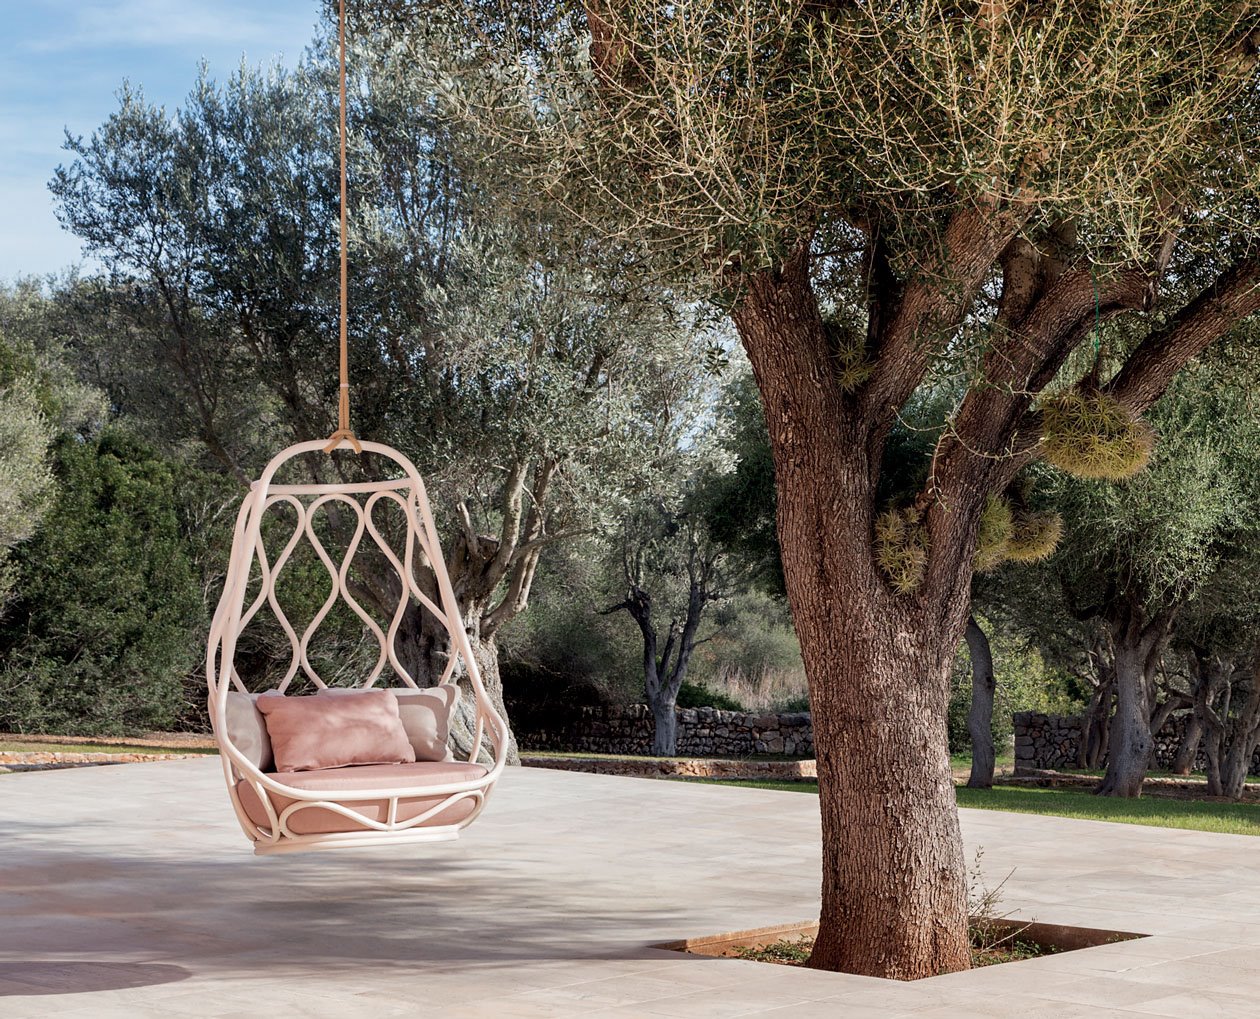 EXPORMIM nautica-outdoor-swing-chair-mut-design-expormim-furniture-outdoor-02